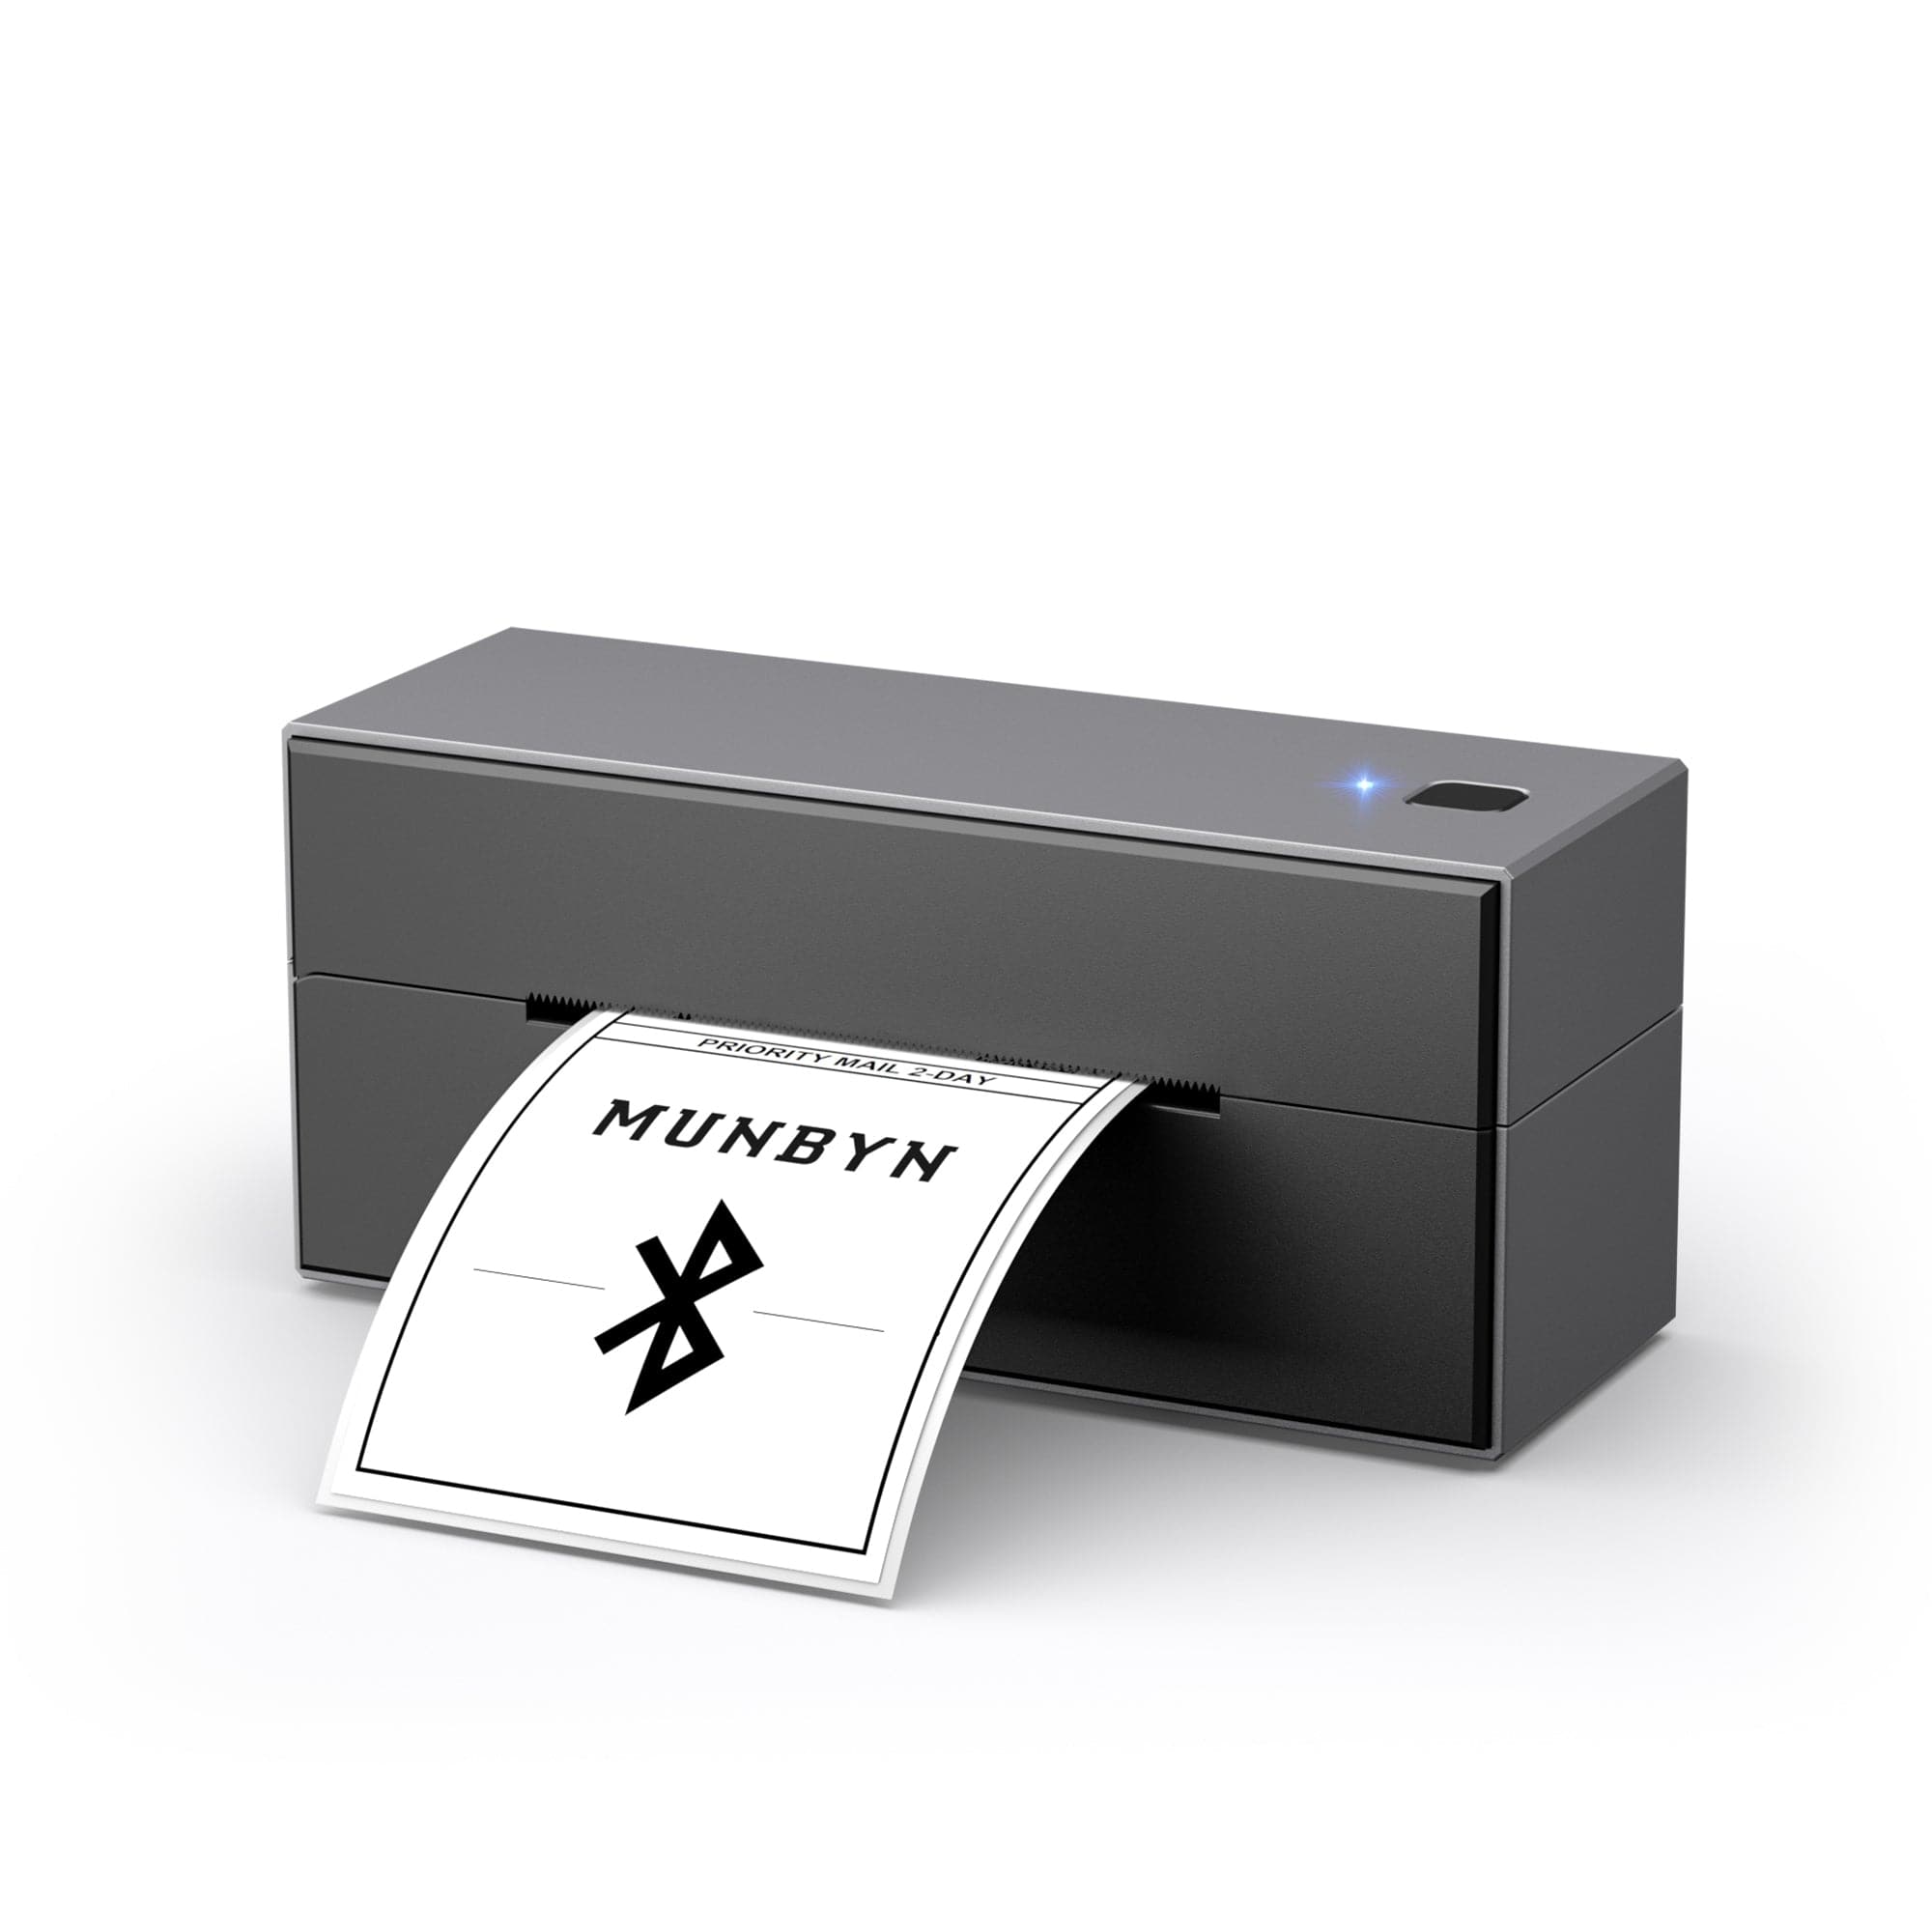 Wireless Bluetooth Thermal Label Printer Starter Kit | MUNBYN®